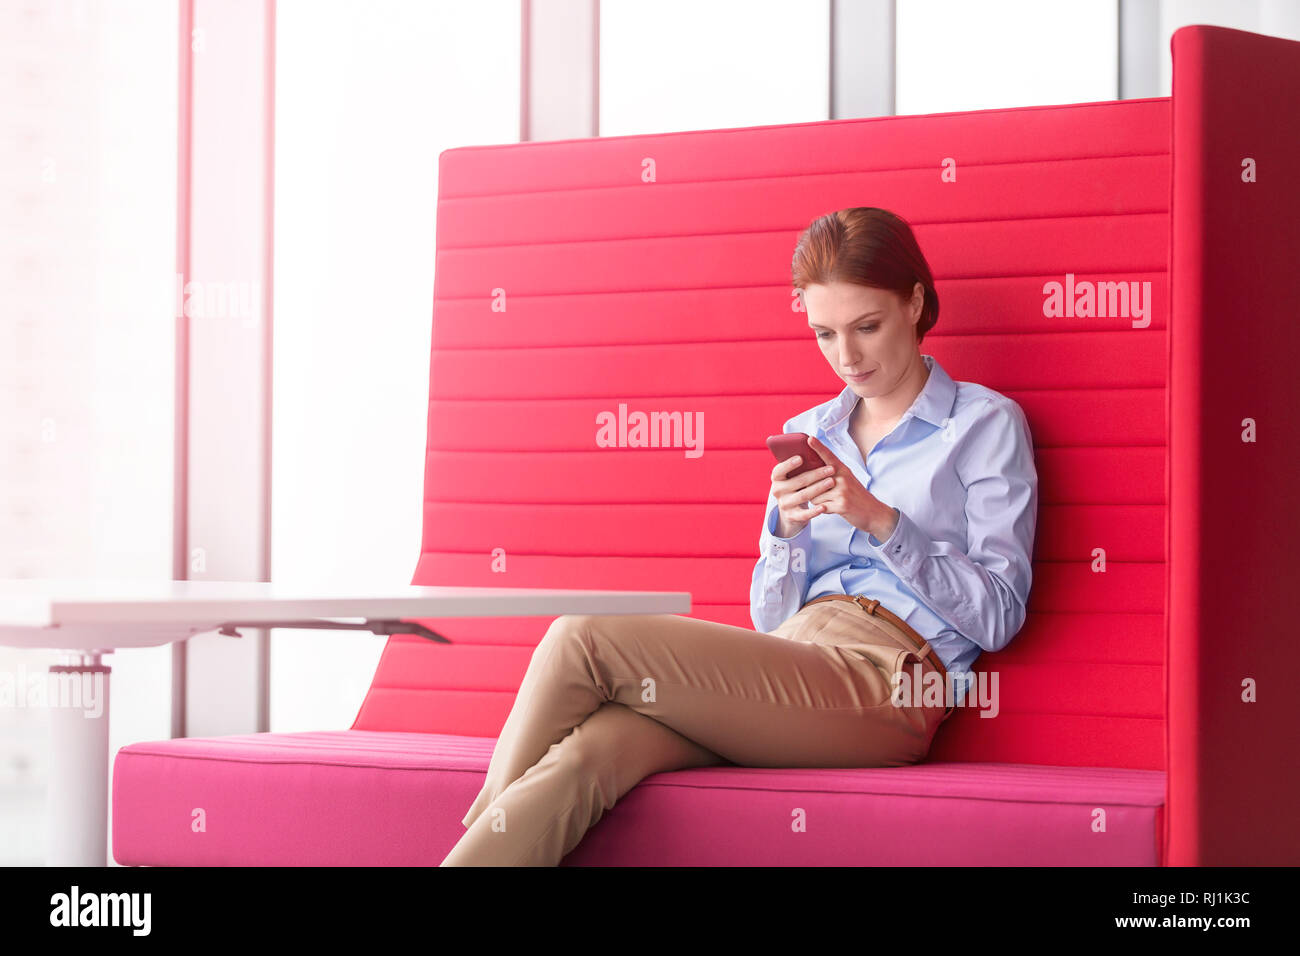 Young businesswoman messaging sur smartphone tout en étant assis sur le siège rouge at office Banque D'Images